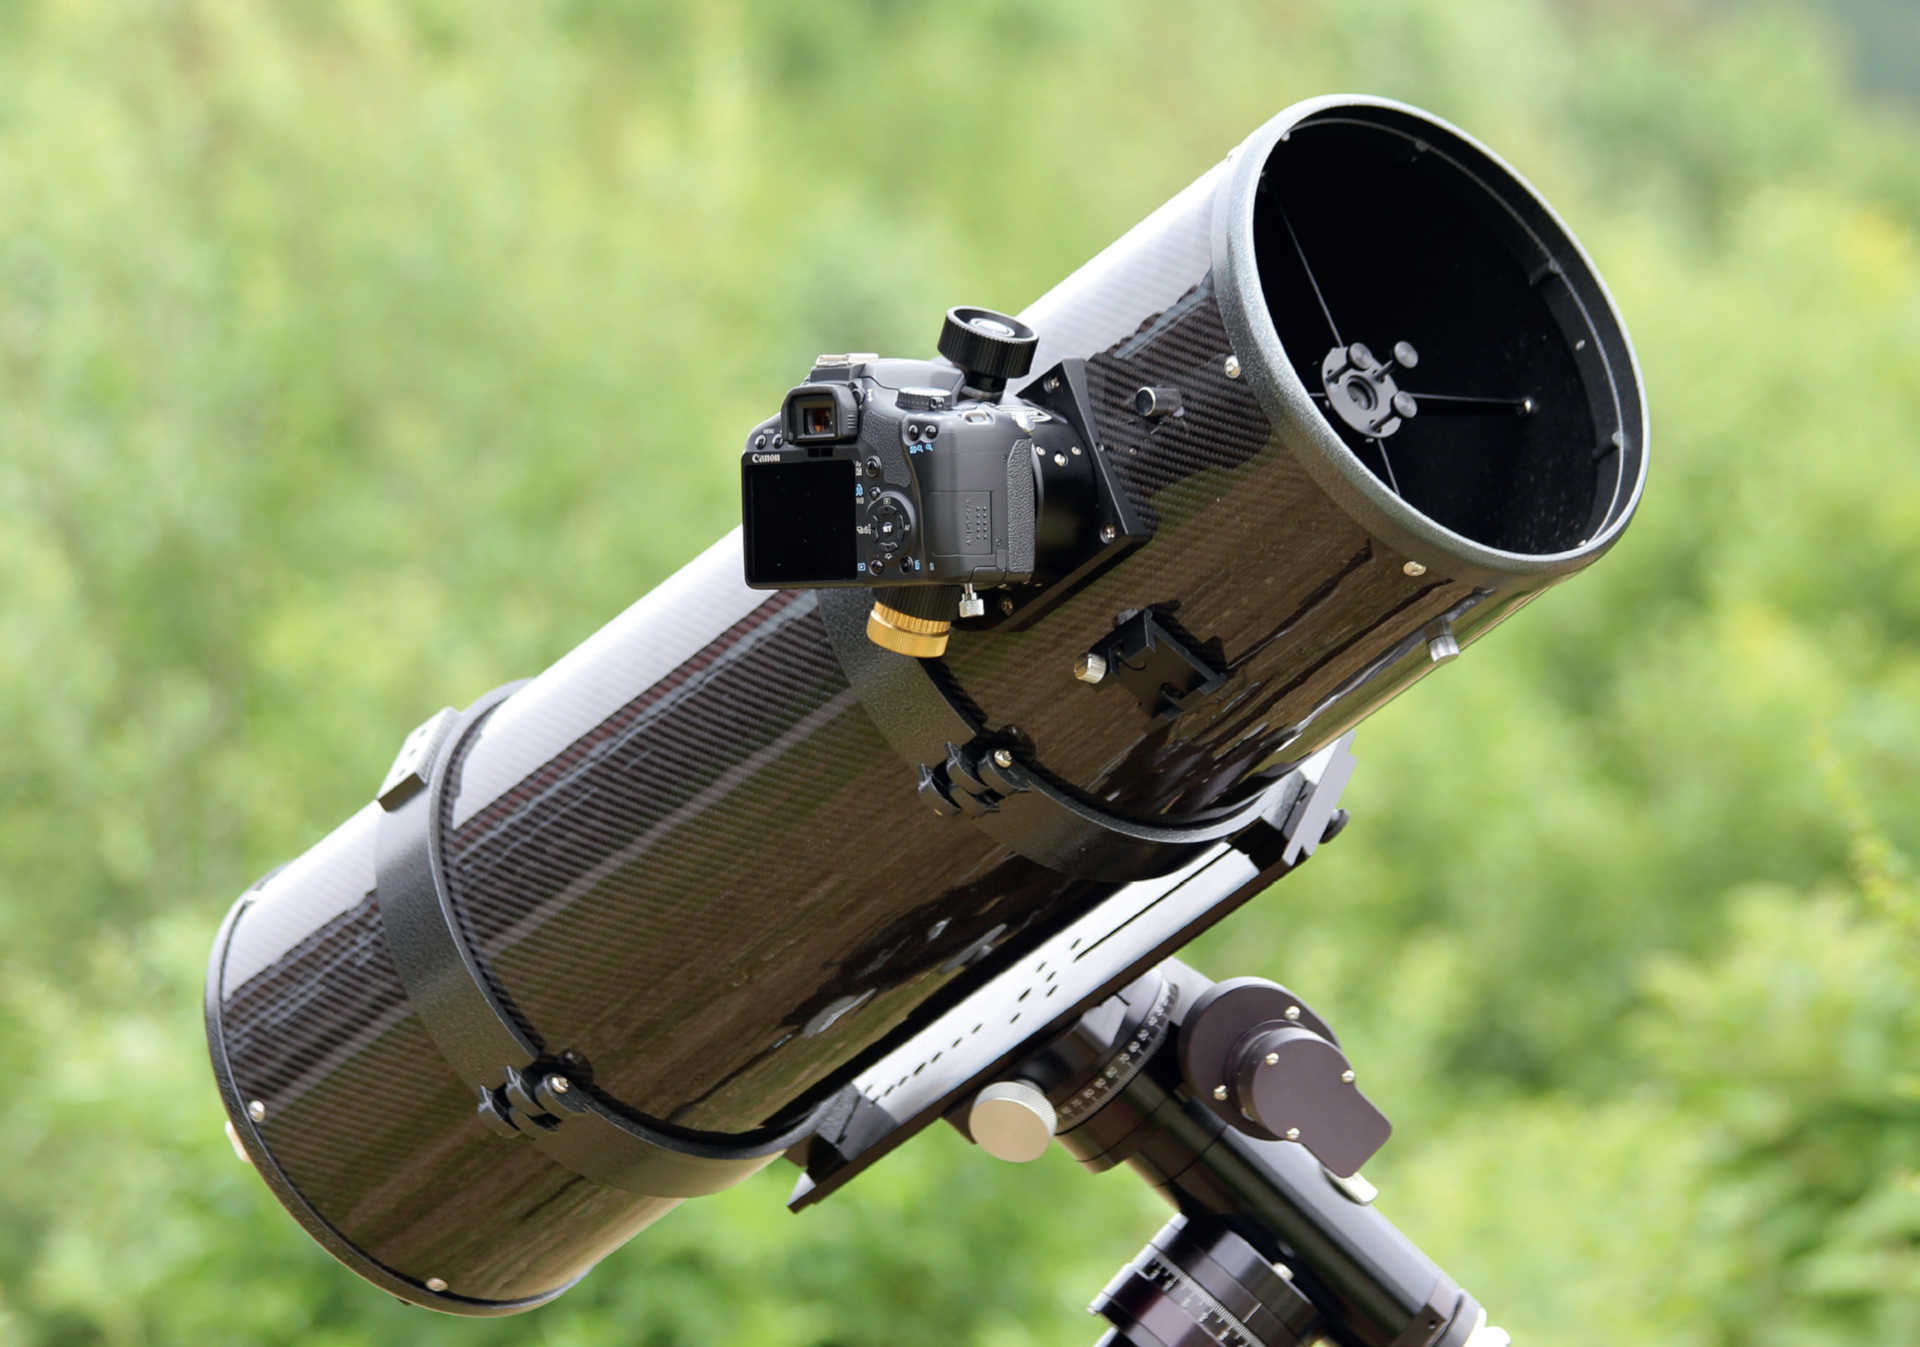 Många amatörteleskop kan
enkelt kopplas till en DSLR.
Här används en prisvärd kamera med
APS-C-sensor tillsammans med ett Newton-teleskop.